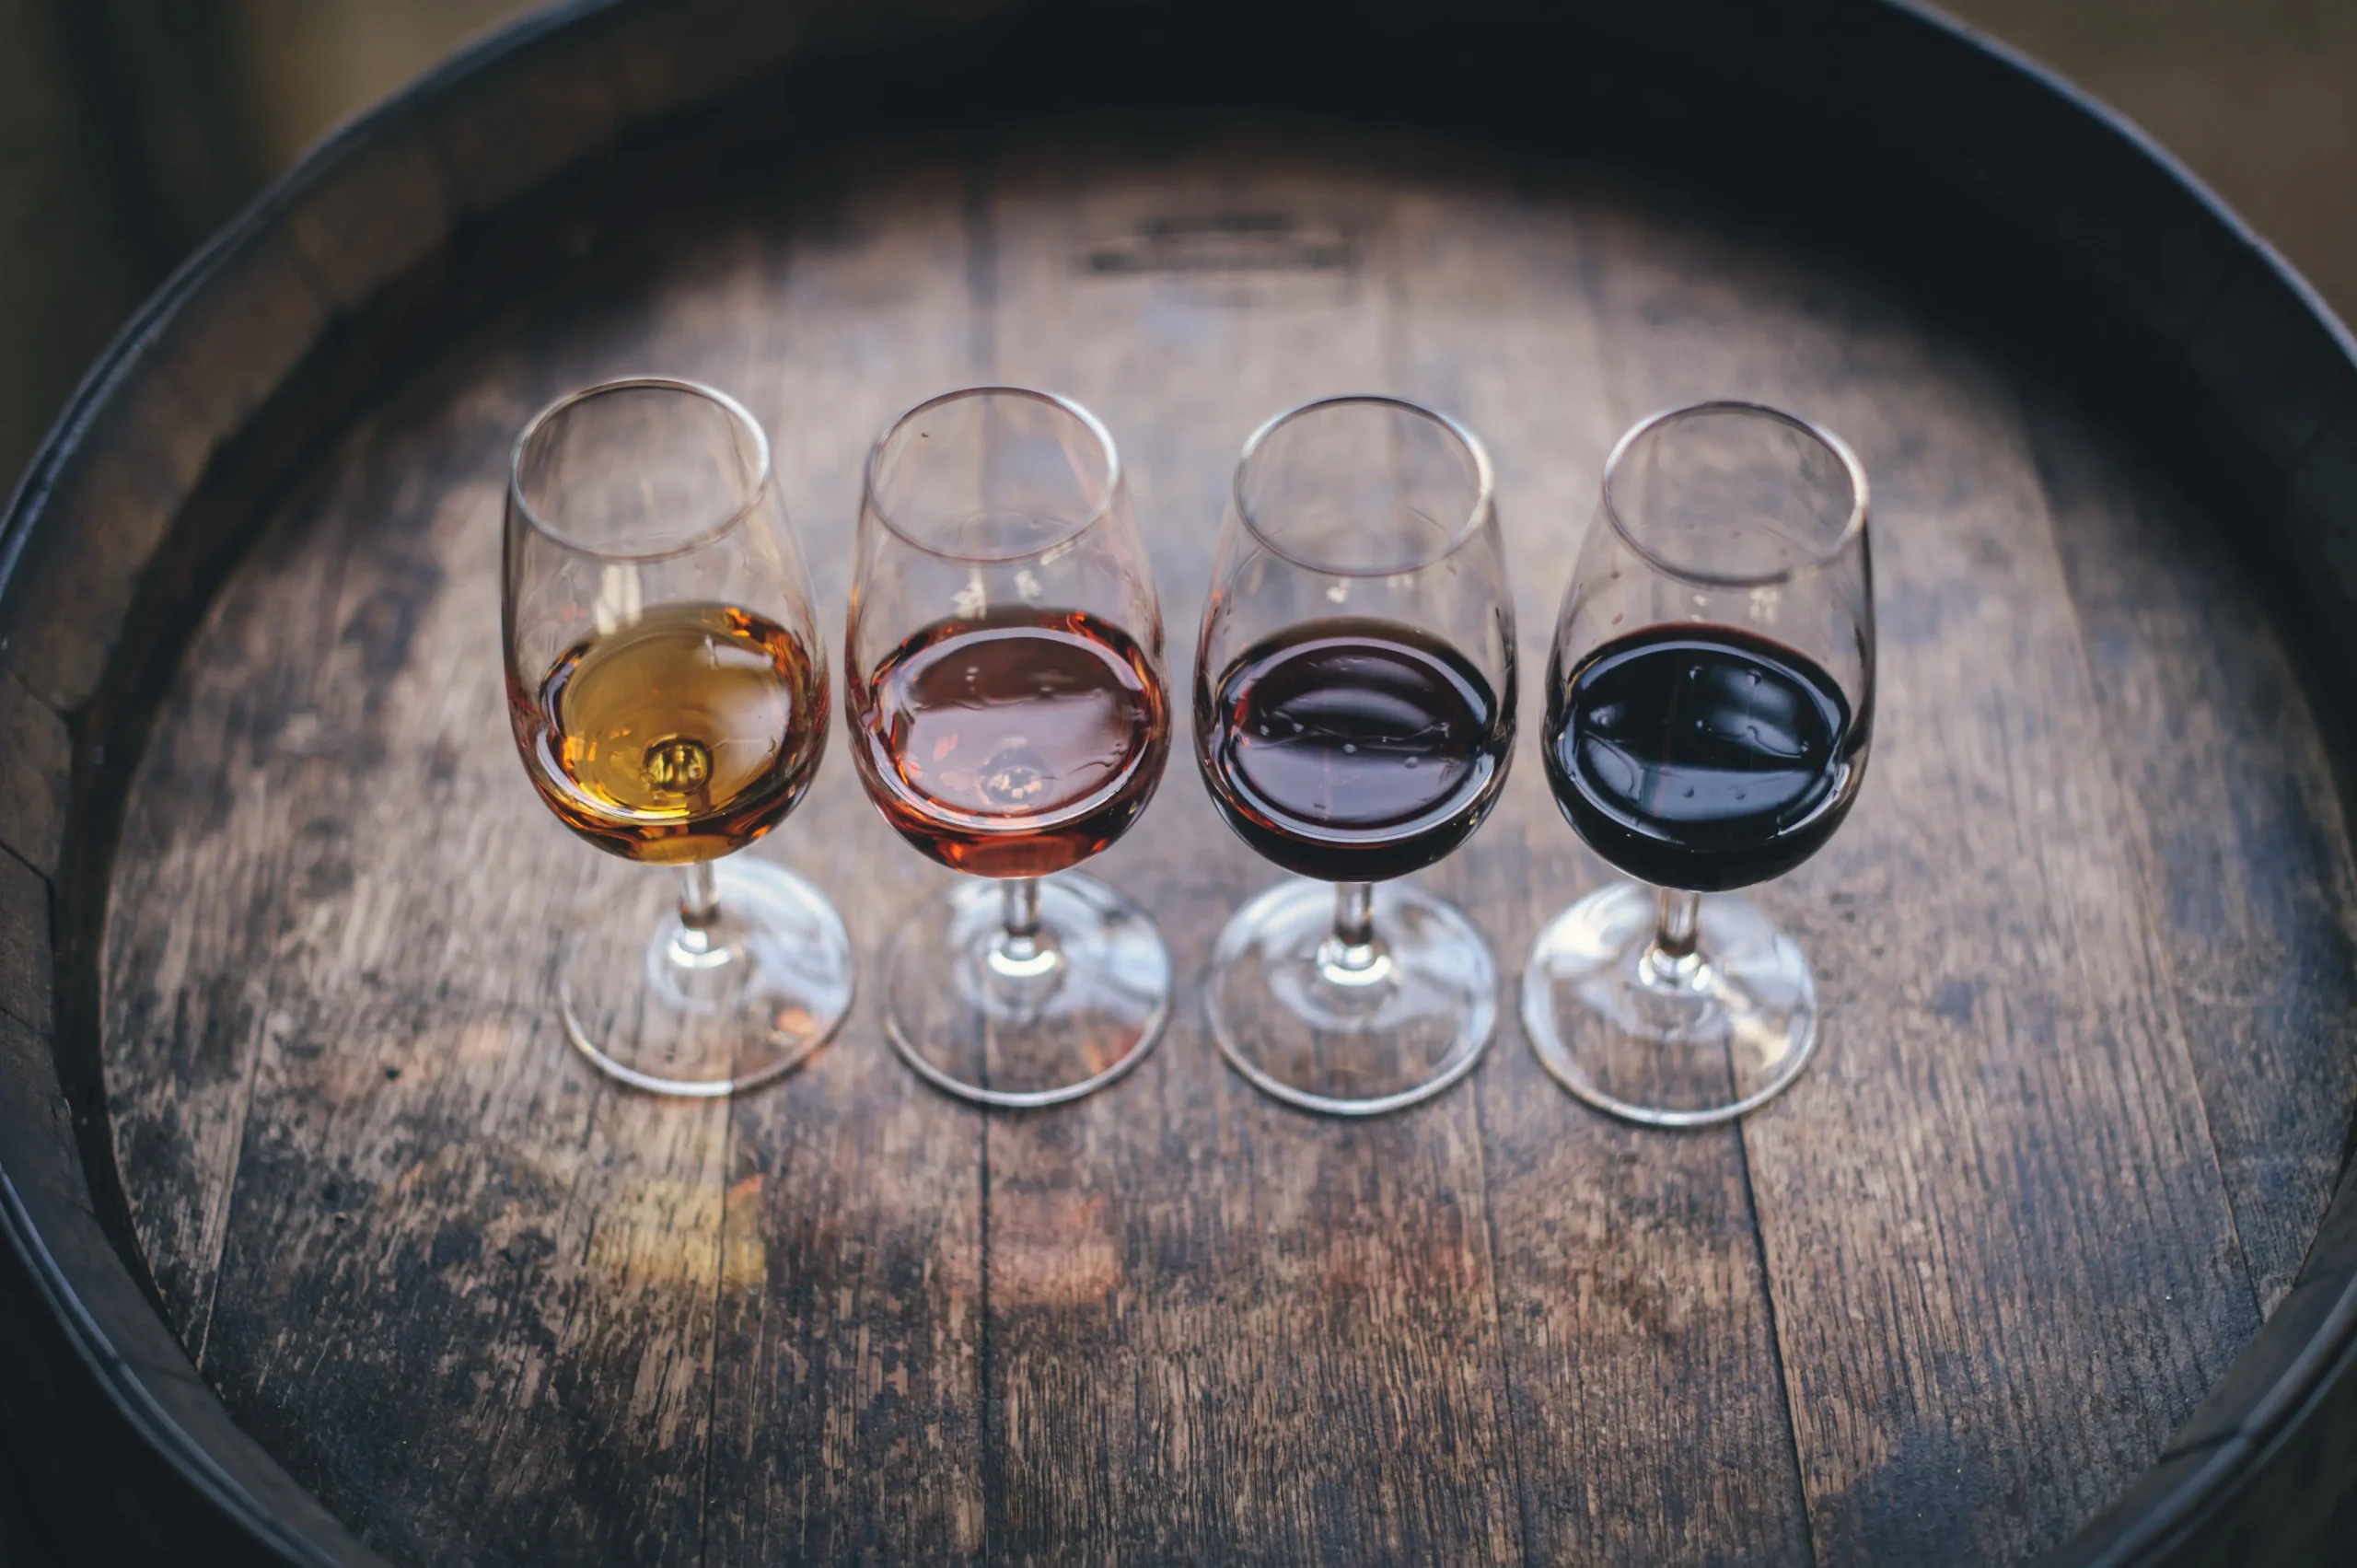 Que calidad ofrecen las vinotecas Ceotec?